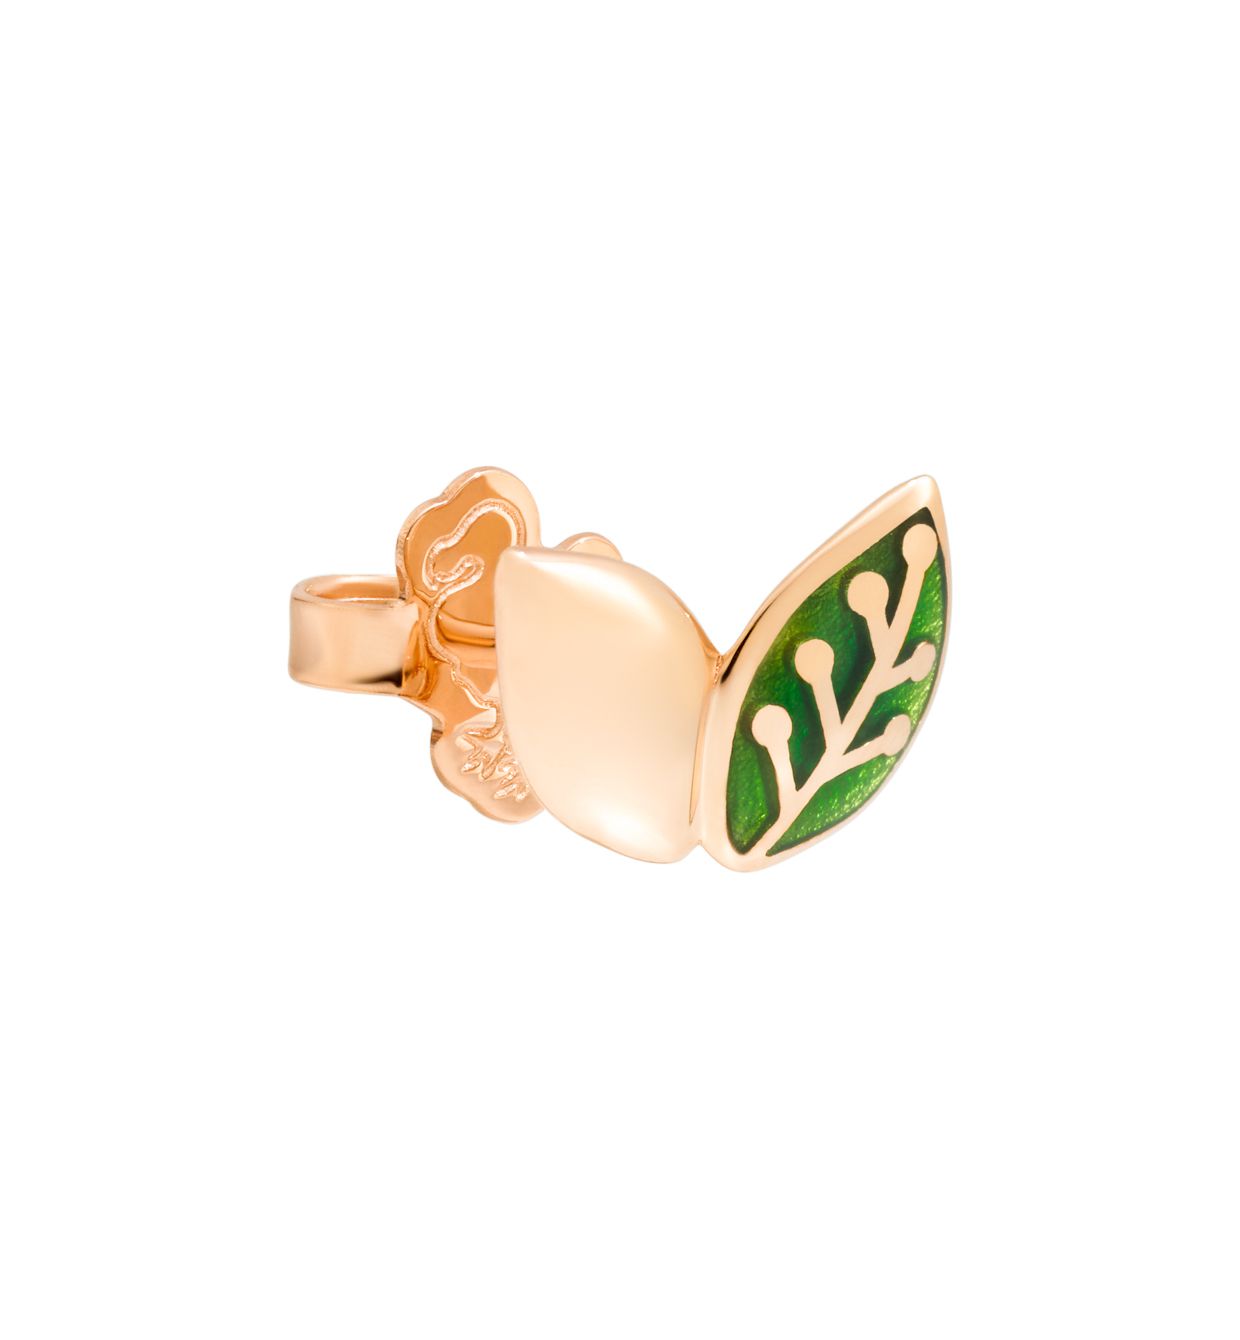 DoDo Leaf Earring in 9k Rose Gold and Green Enamel (single) - Orsini Jewellers NZ